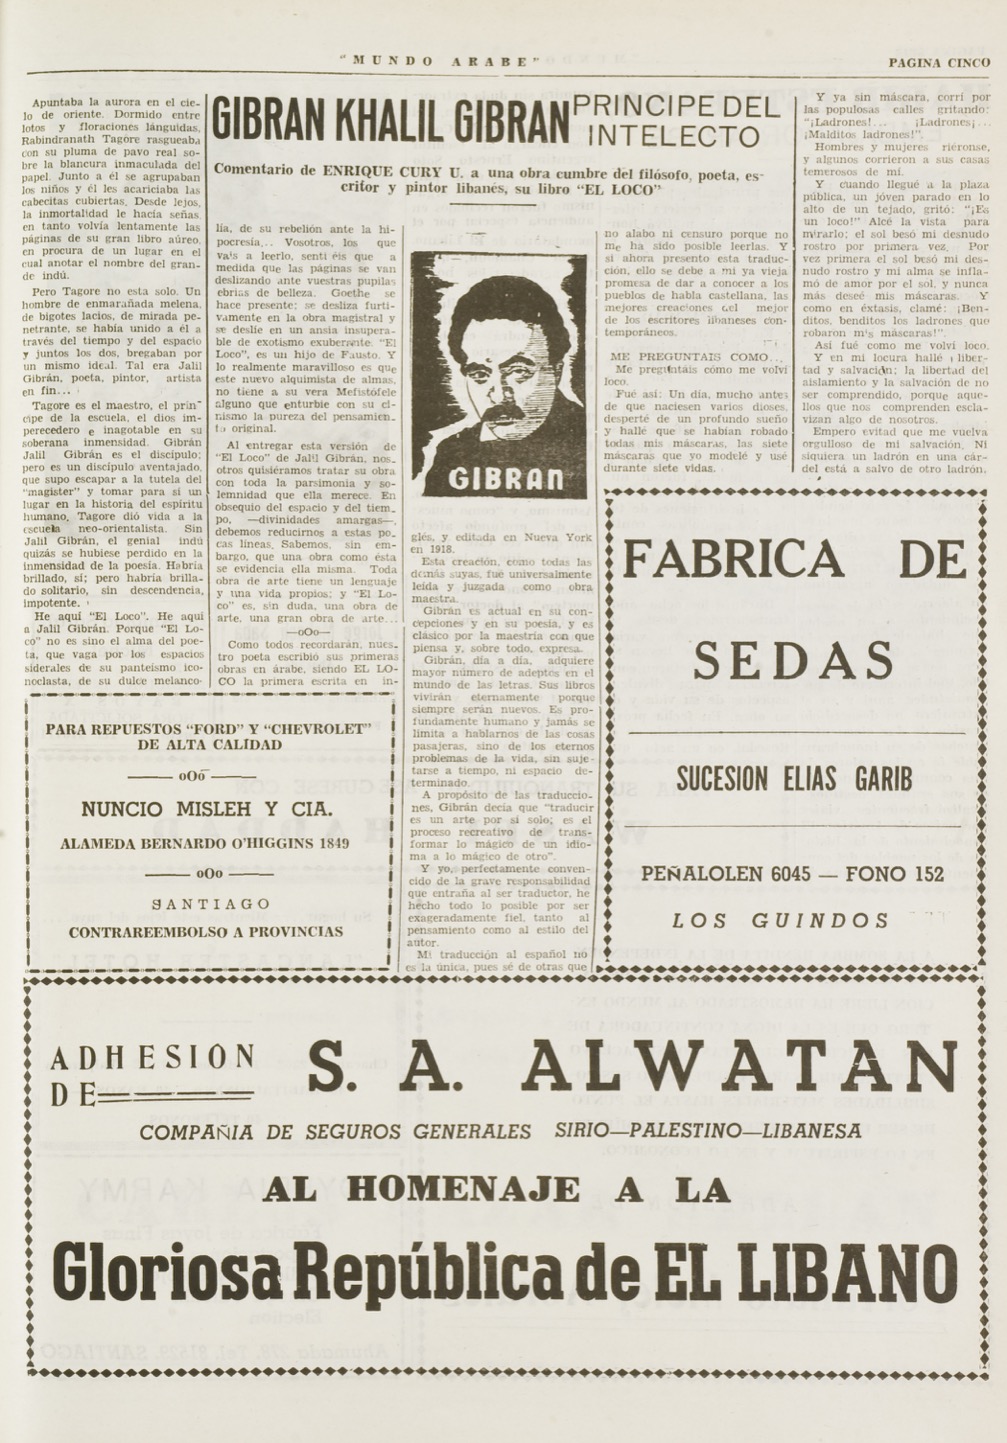 Enrique Cury U., "Gibran Khalil Gibran, Principe del Intelecto", Mundo Árabe, Nov 22, 1954, p. 5.